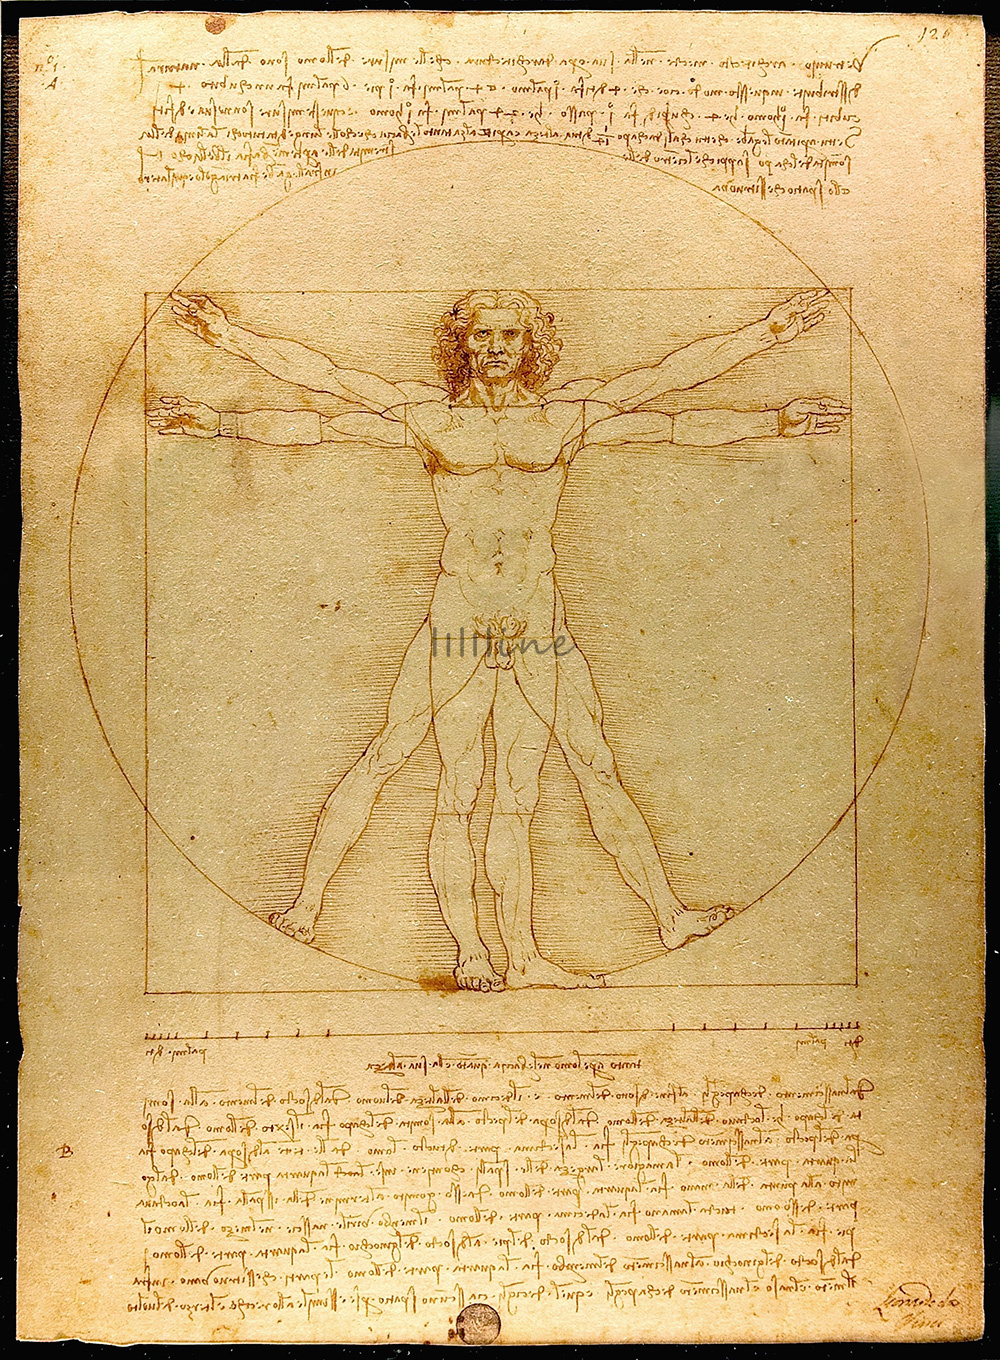 l'Uomo vitruviano di Leonardo da Vinci